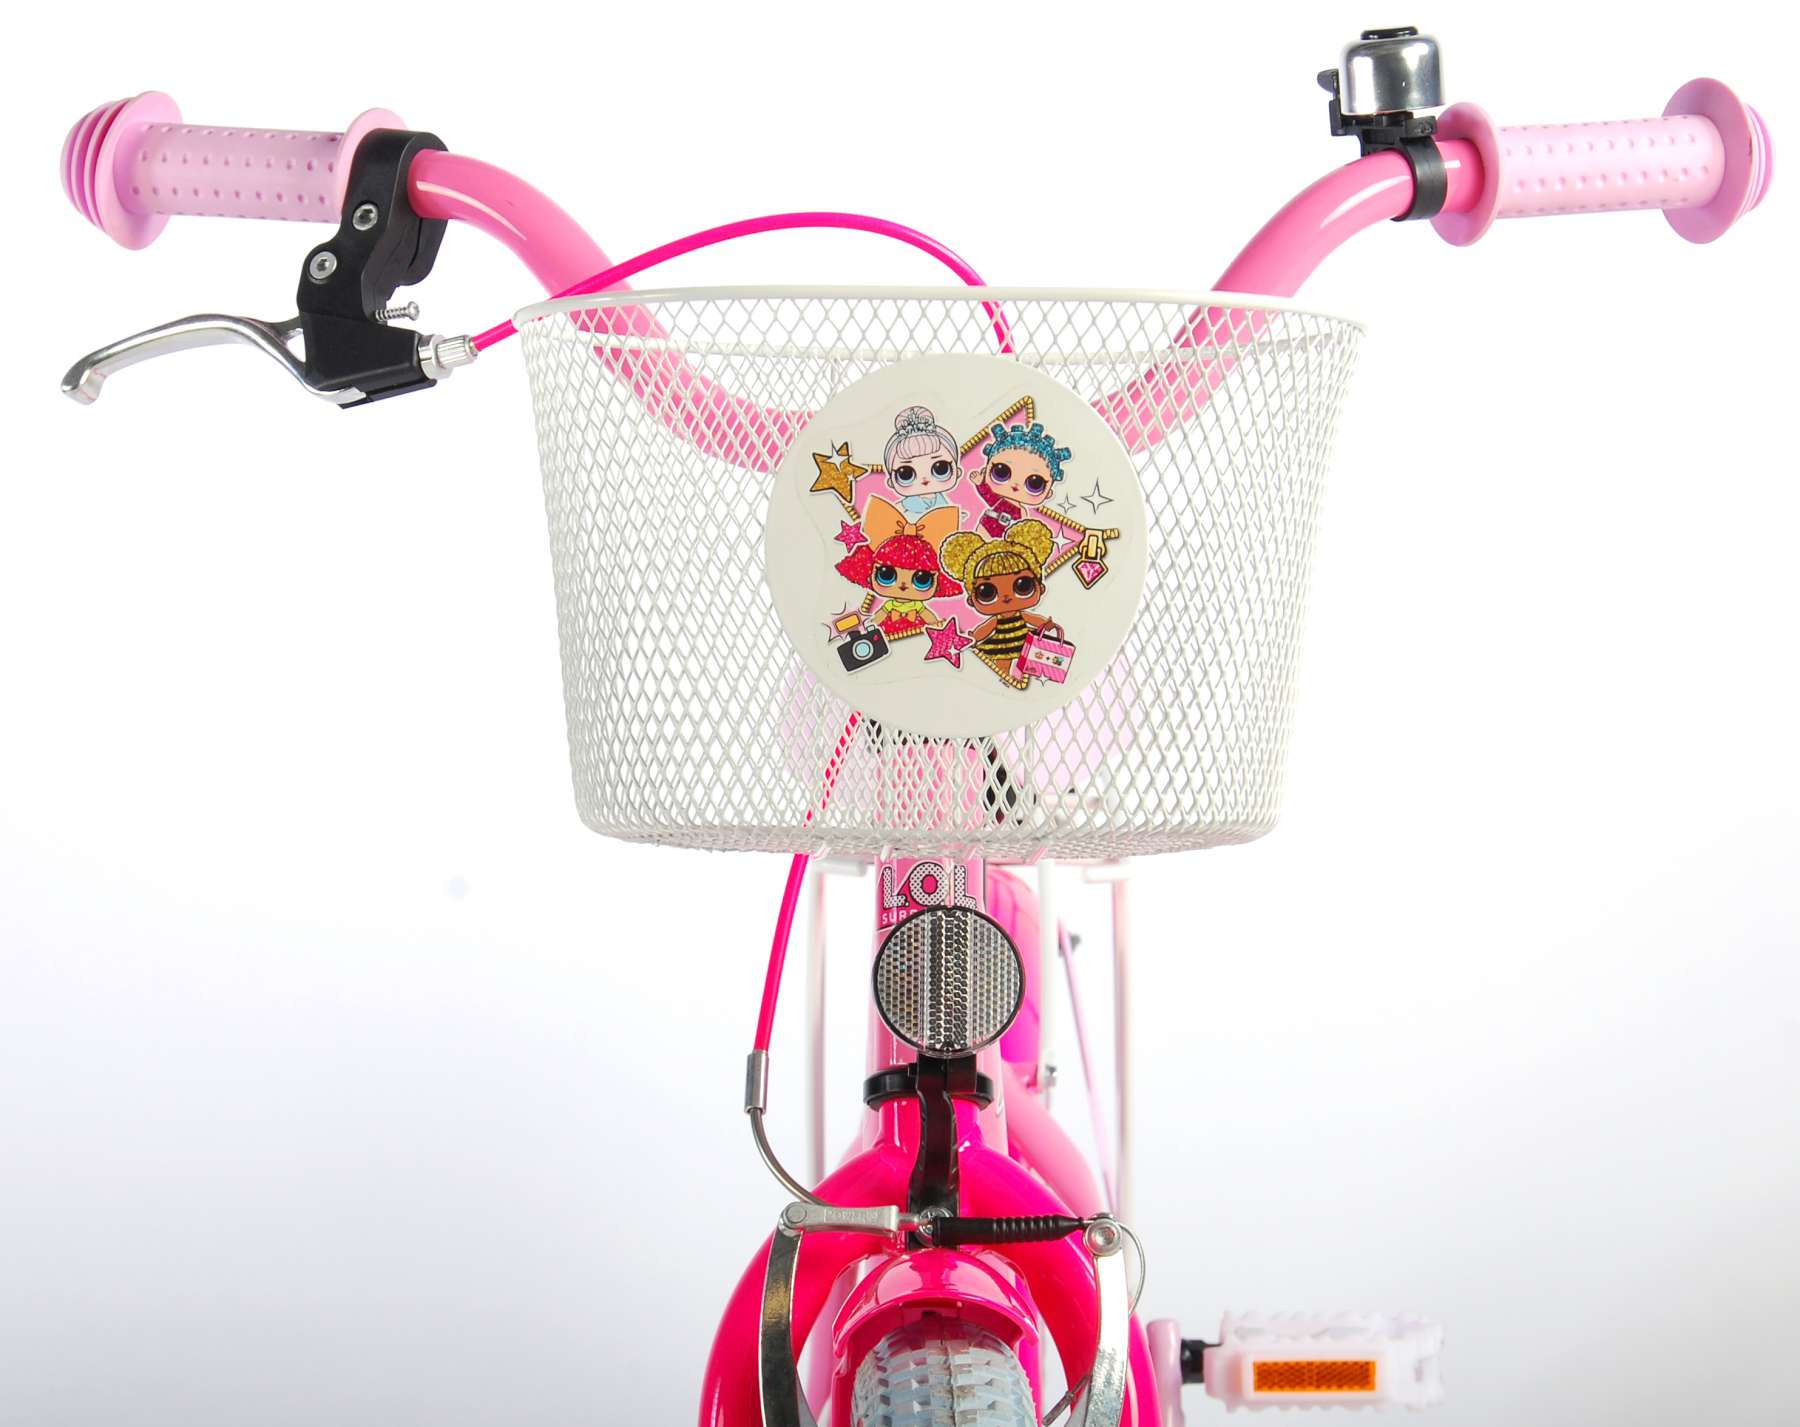 Kinderfahrrad LOL Surprise 18 Zoll Mädchen Kinderrad Fahrrad in Pink